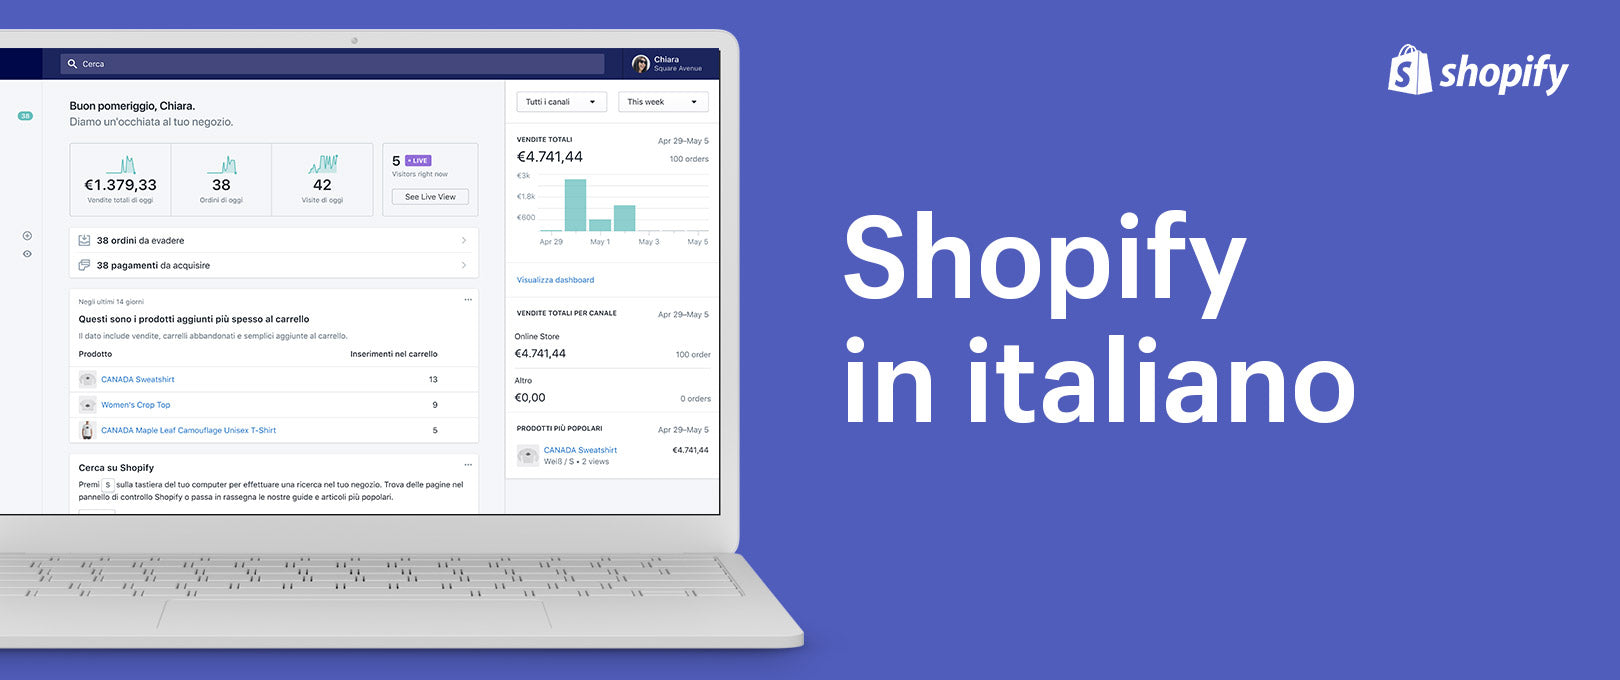 Shopify in italiano